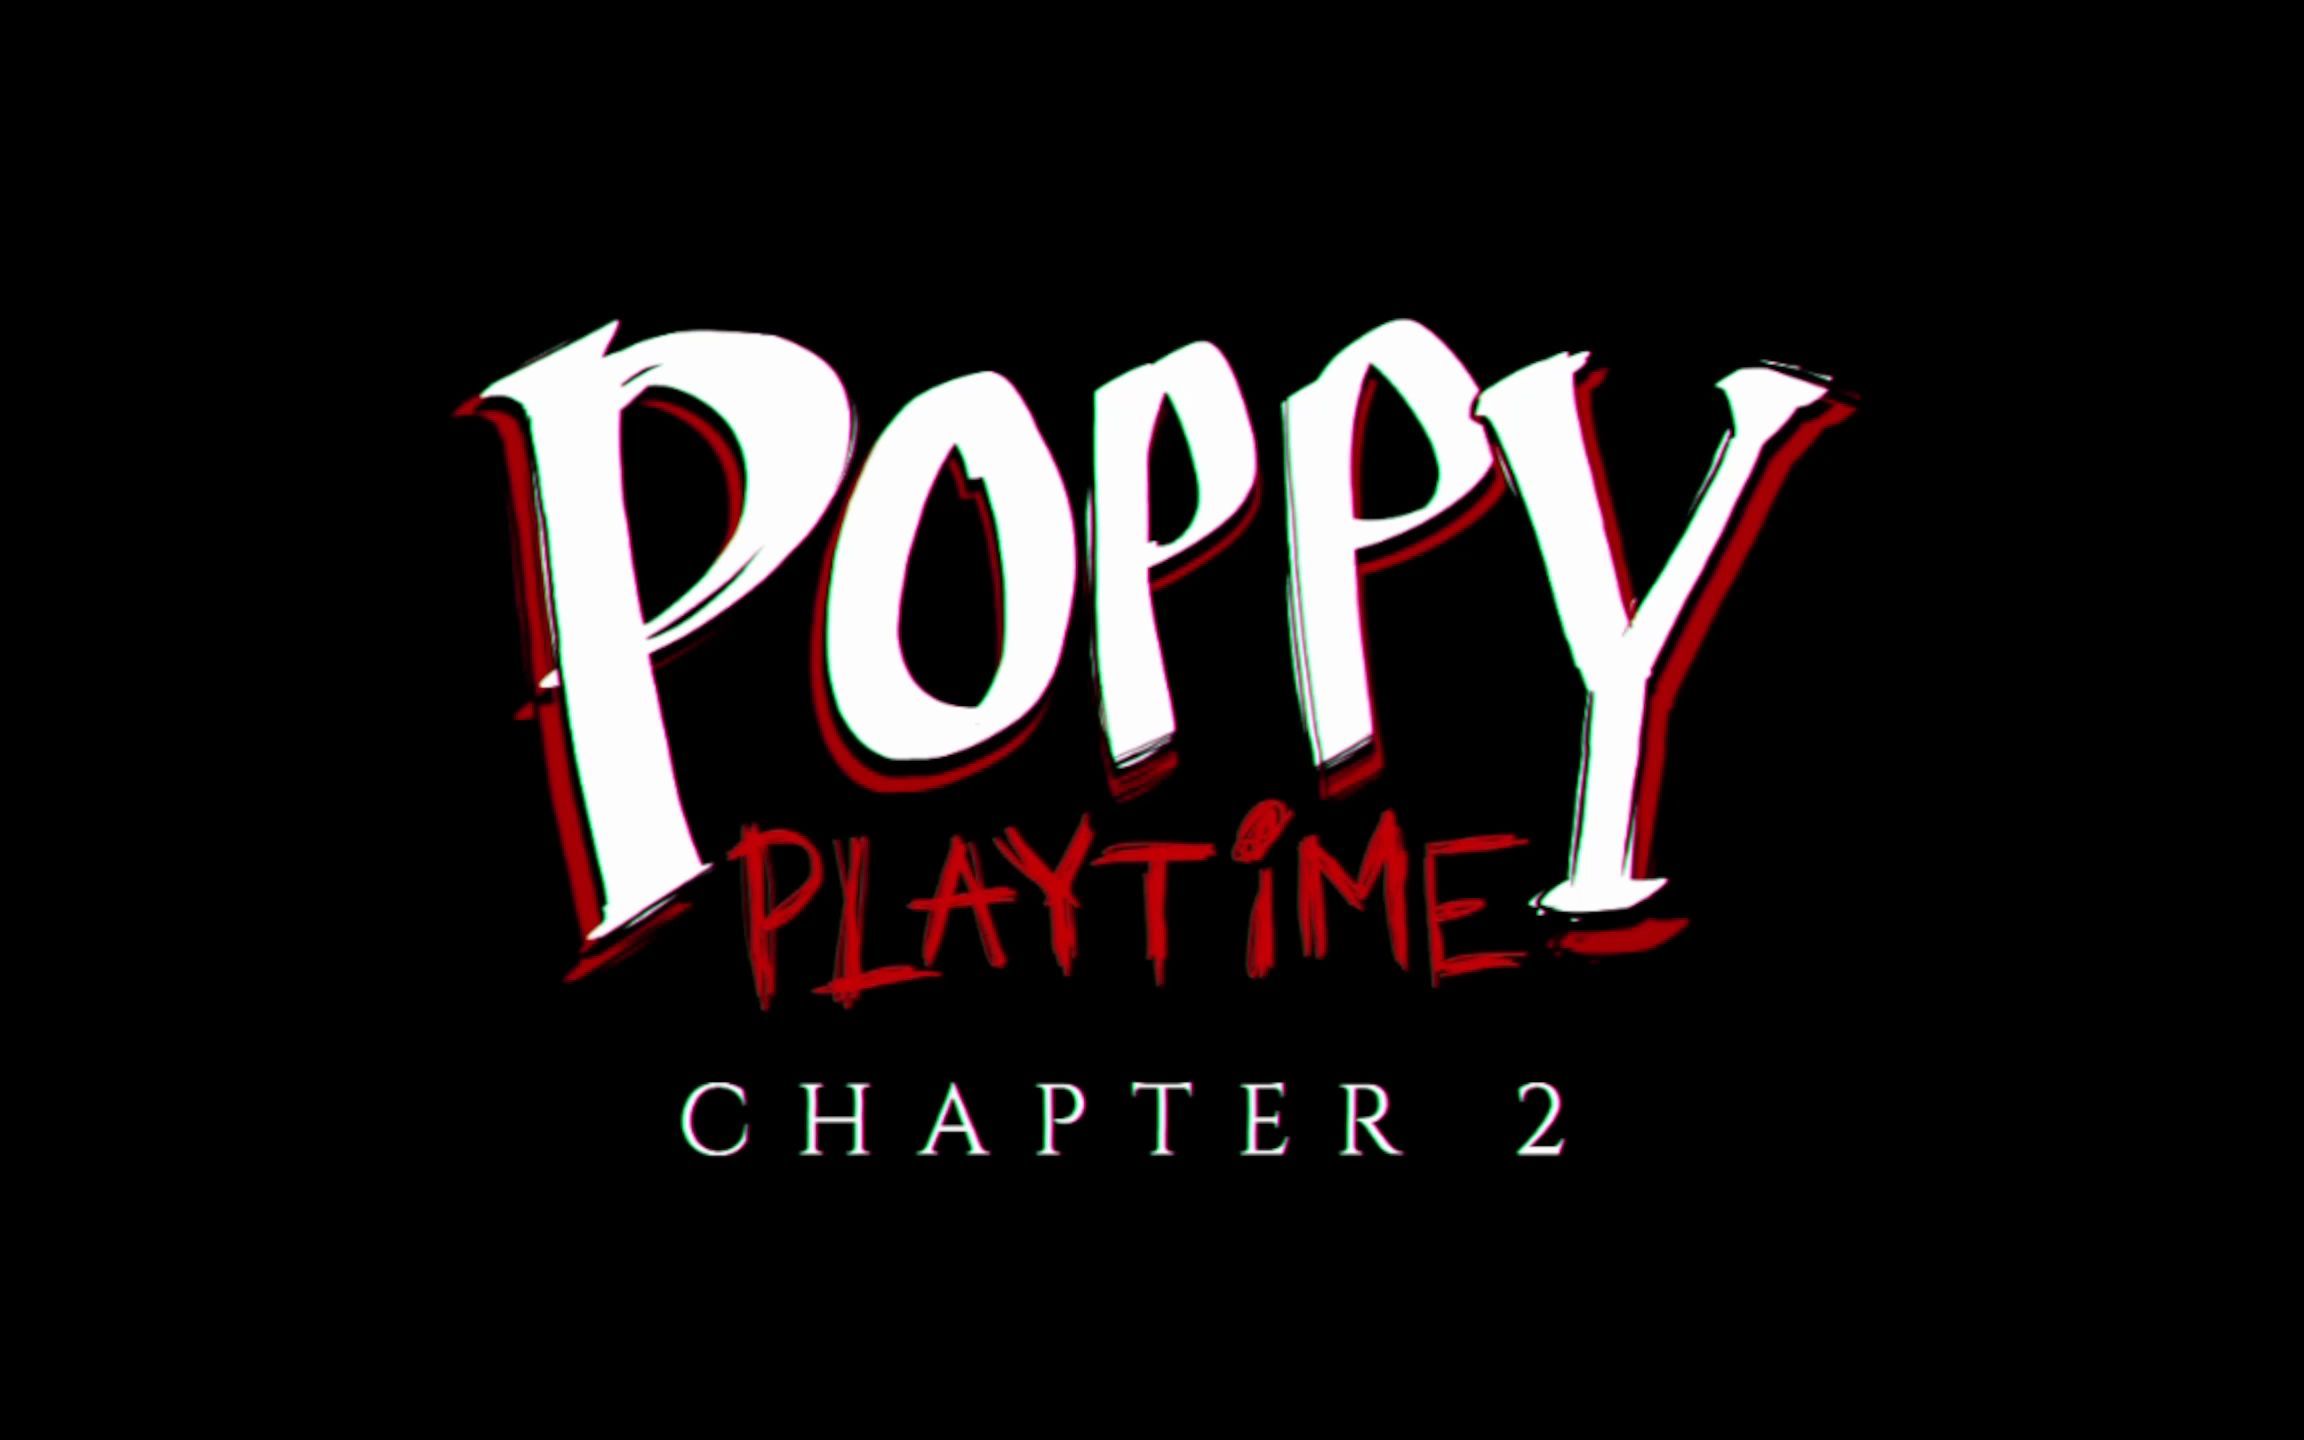 poppy playtime2预告片图片